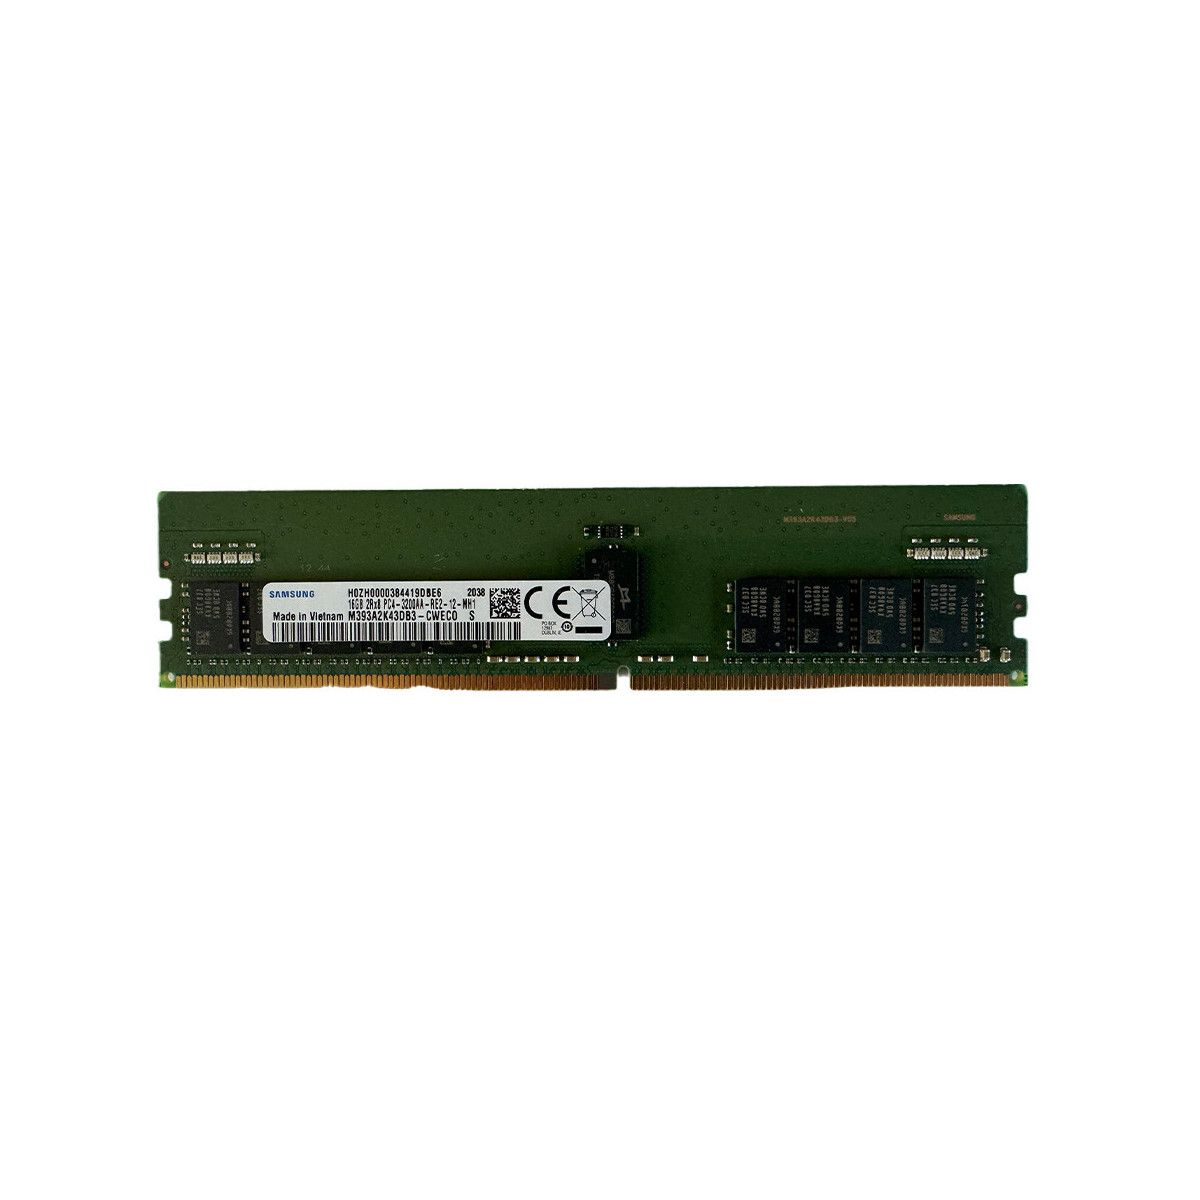 AA810826-MS - Memstar 1x 16GB DDR4-3200 RDIMM PC4-25600R - Mem-Star compatibel OEM geheugen 1 - Memstar 